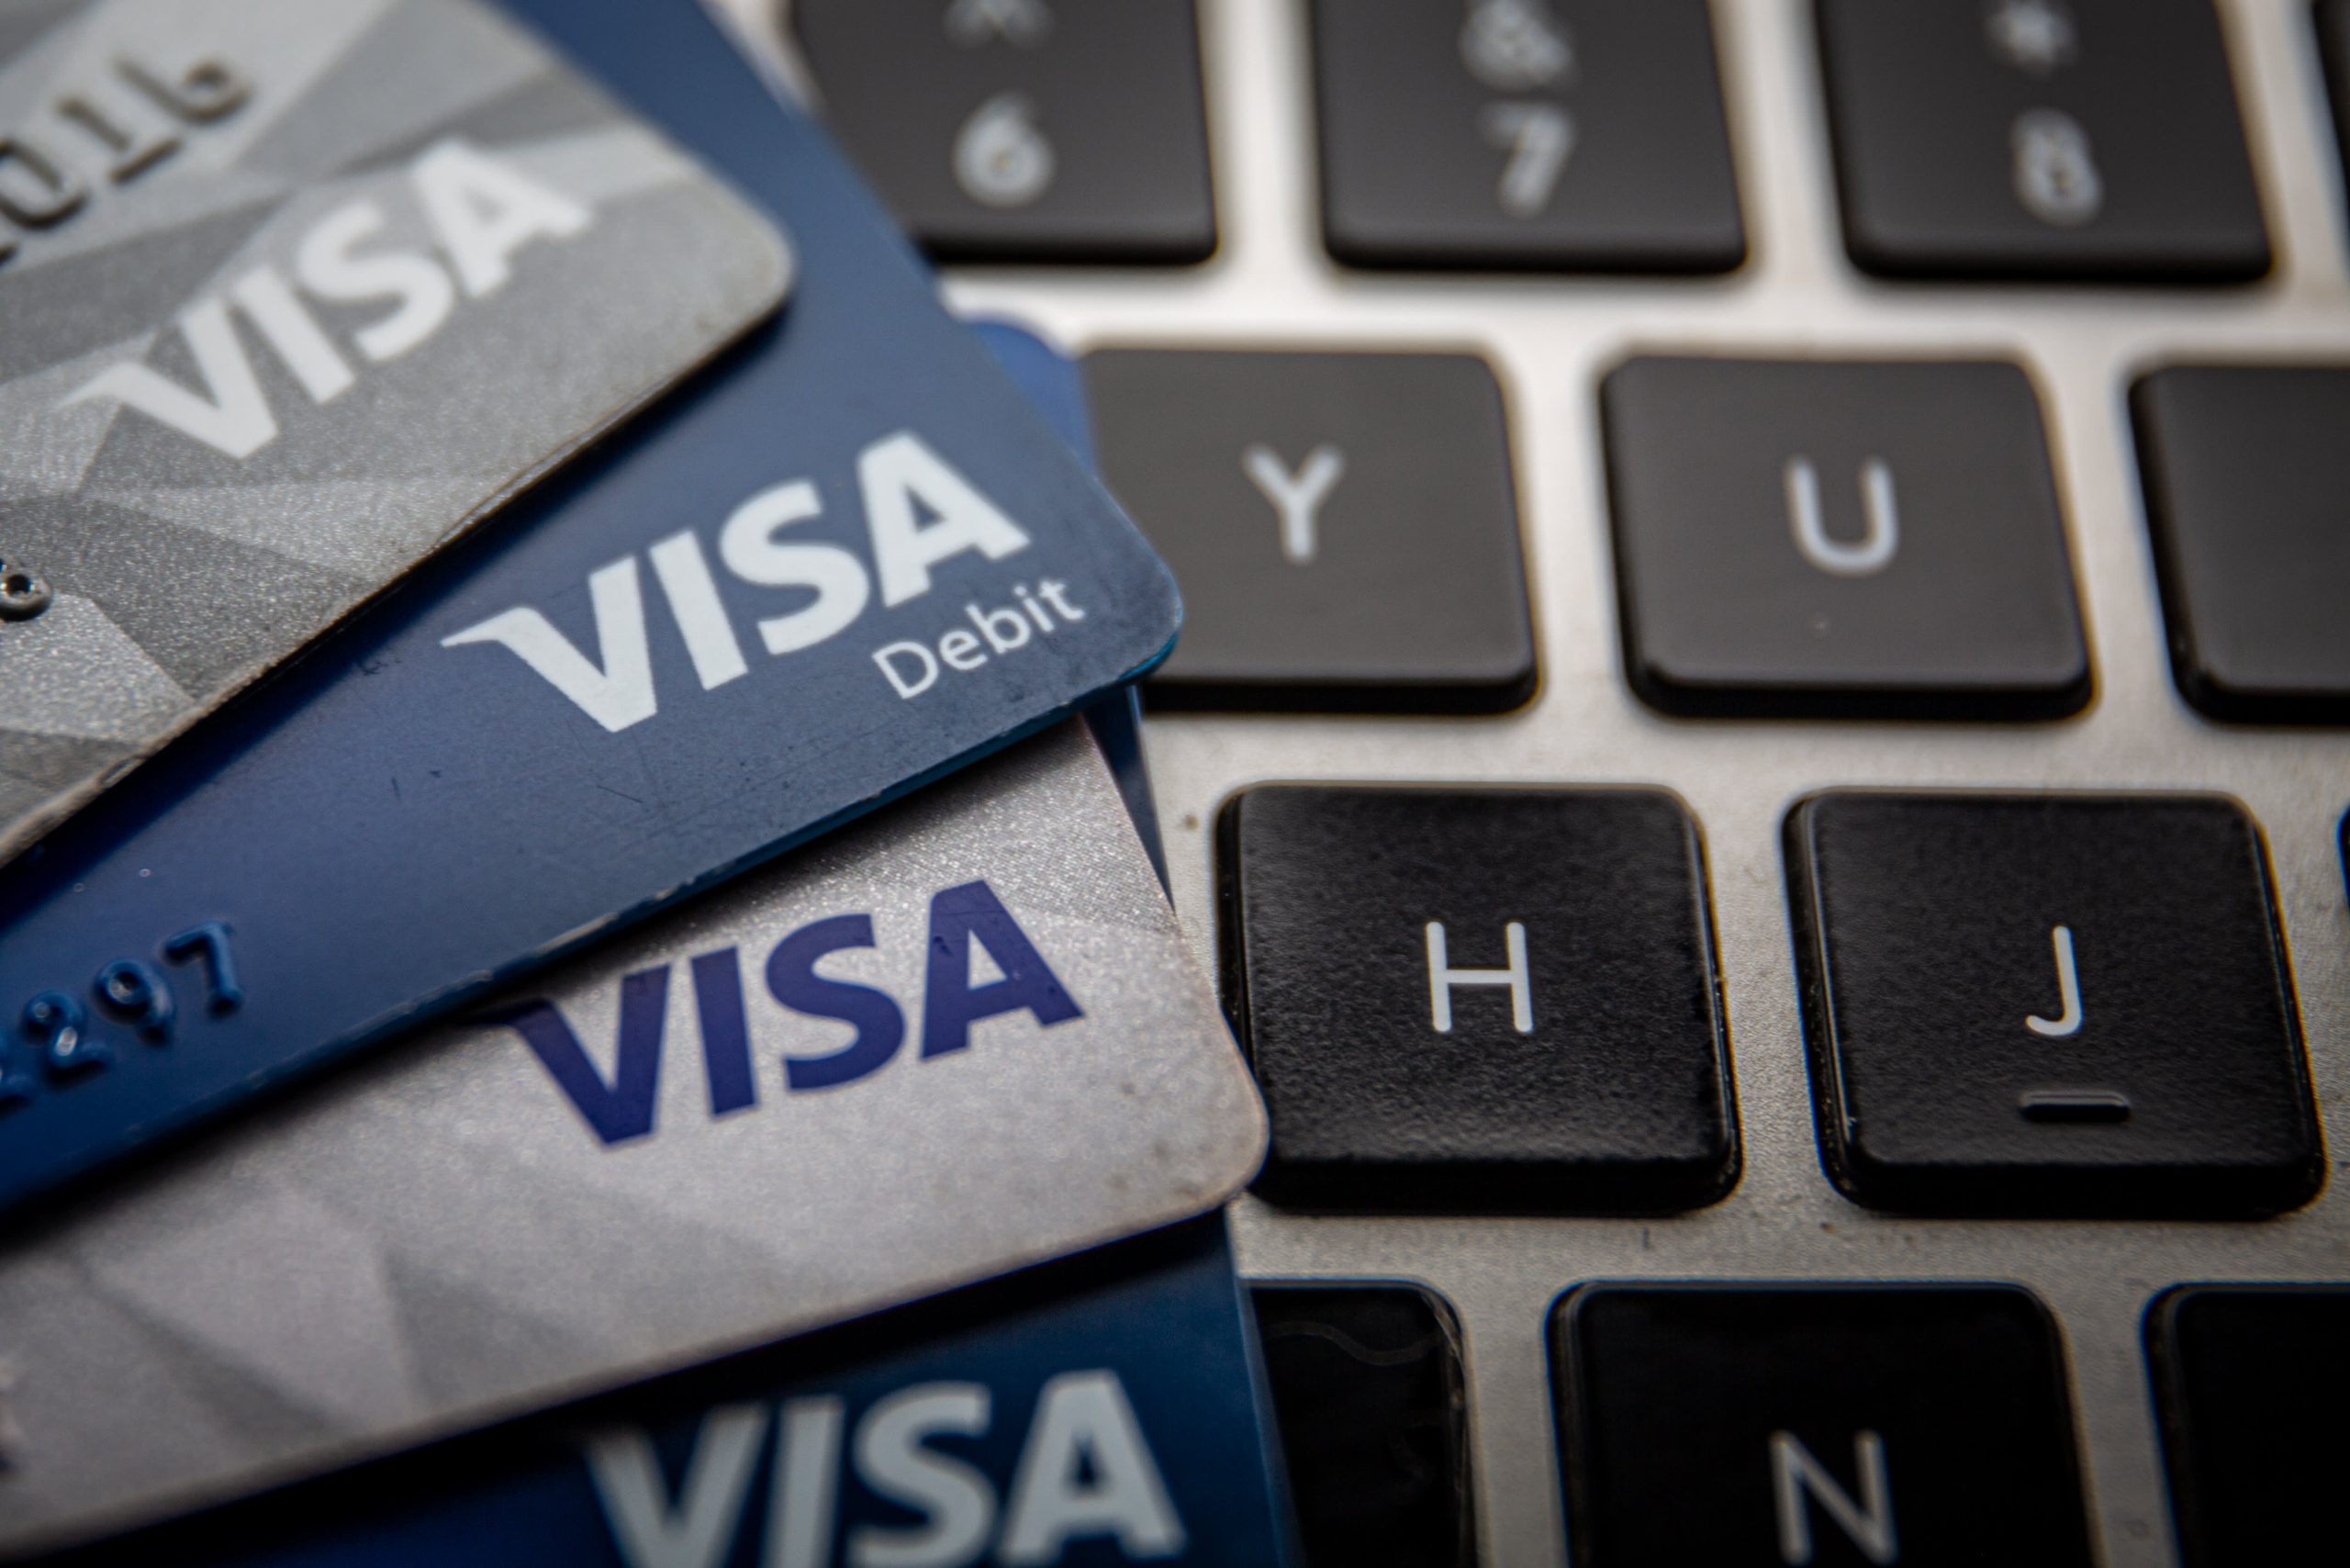 Amazon e Visa raggiungono una tregua globale sulle commissioni delle carte di credito

